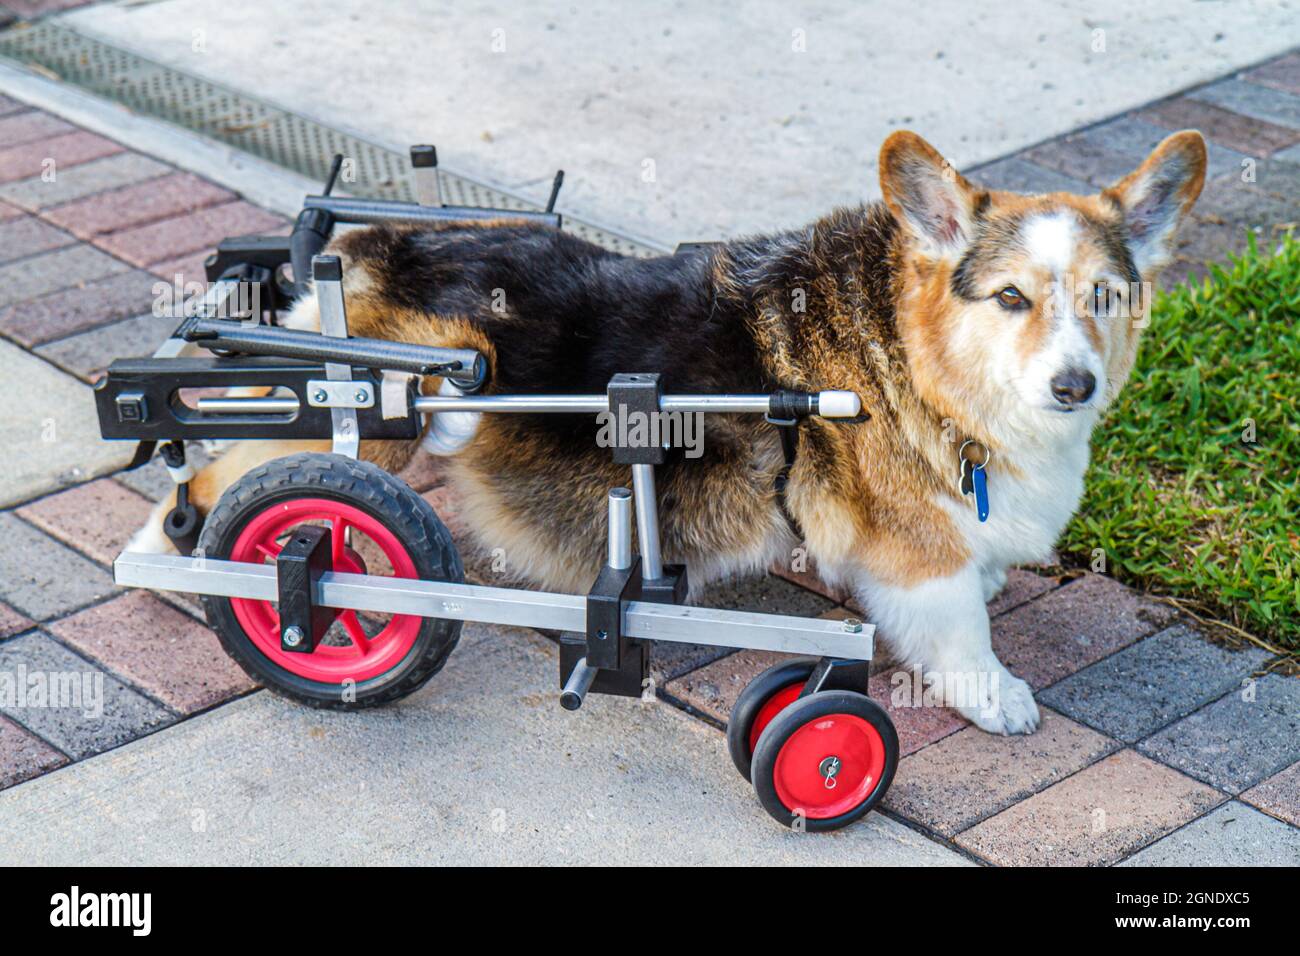 Miami Beach Florida, perro mascota corgi canino mielopatía crónica, degenerativa radiculomielopatía parálisis discapacitada necesidades especiales K 9 Carro Foto de stock